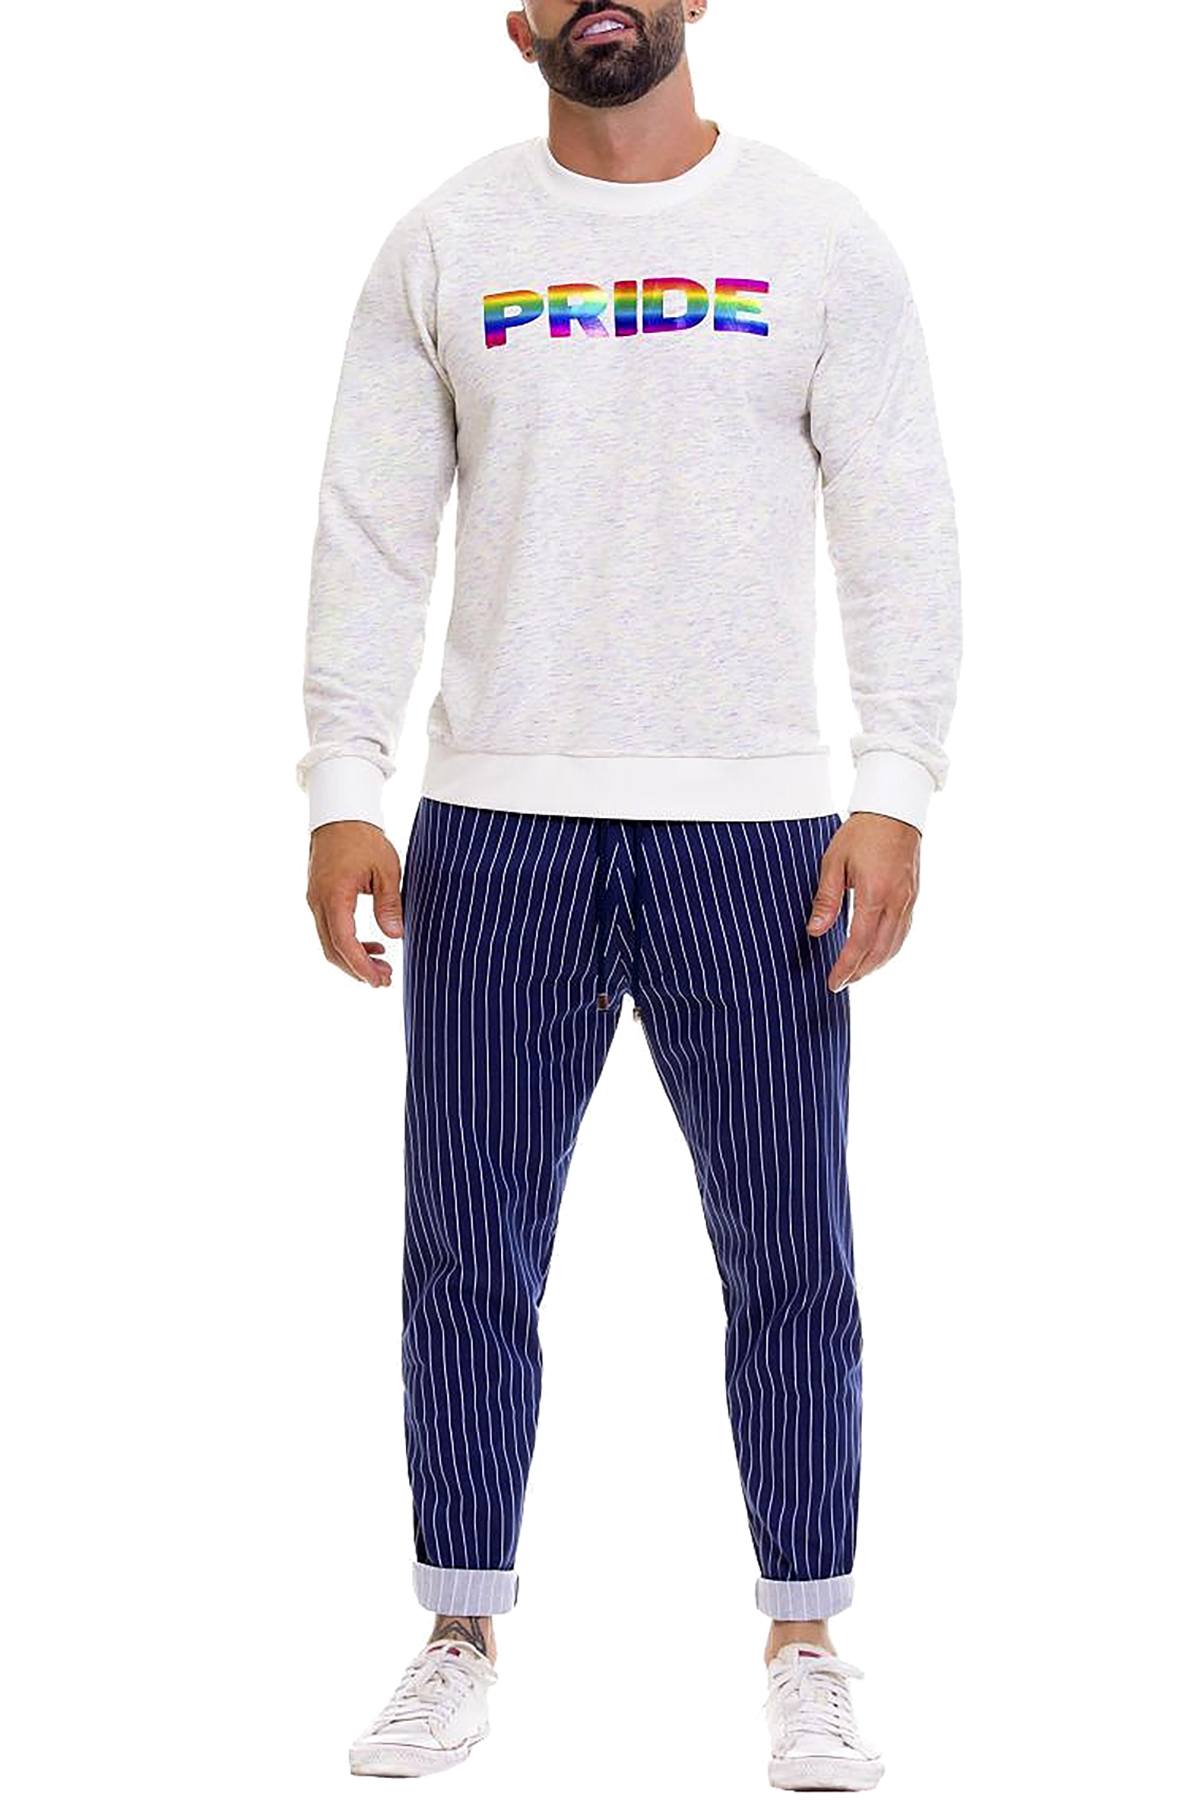 Jor Beige Pride Sweater